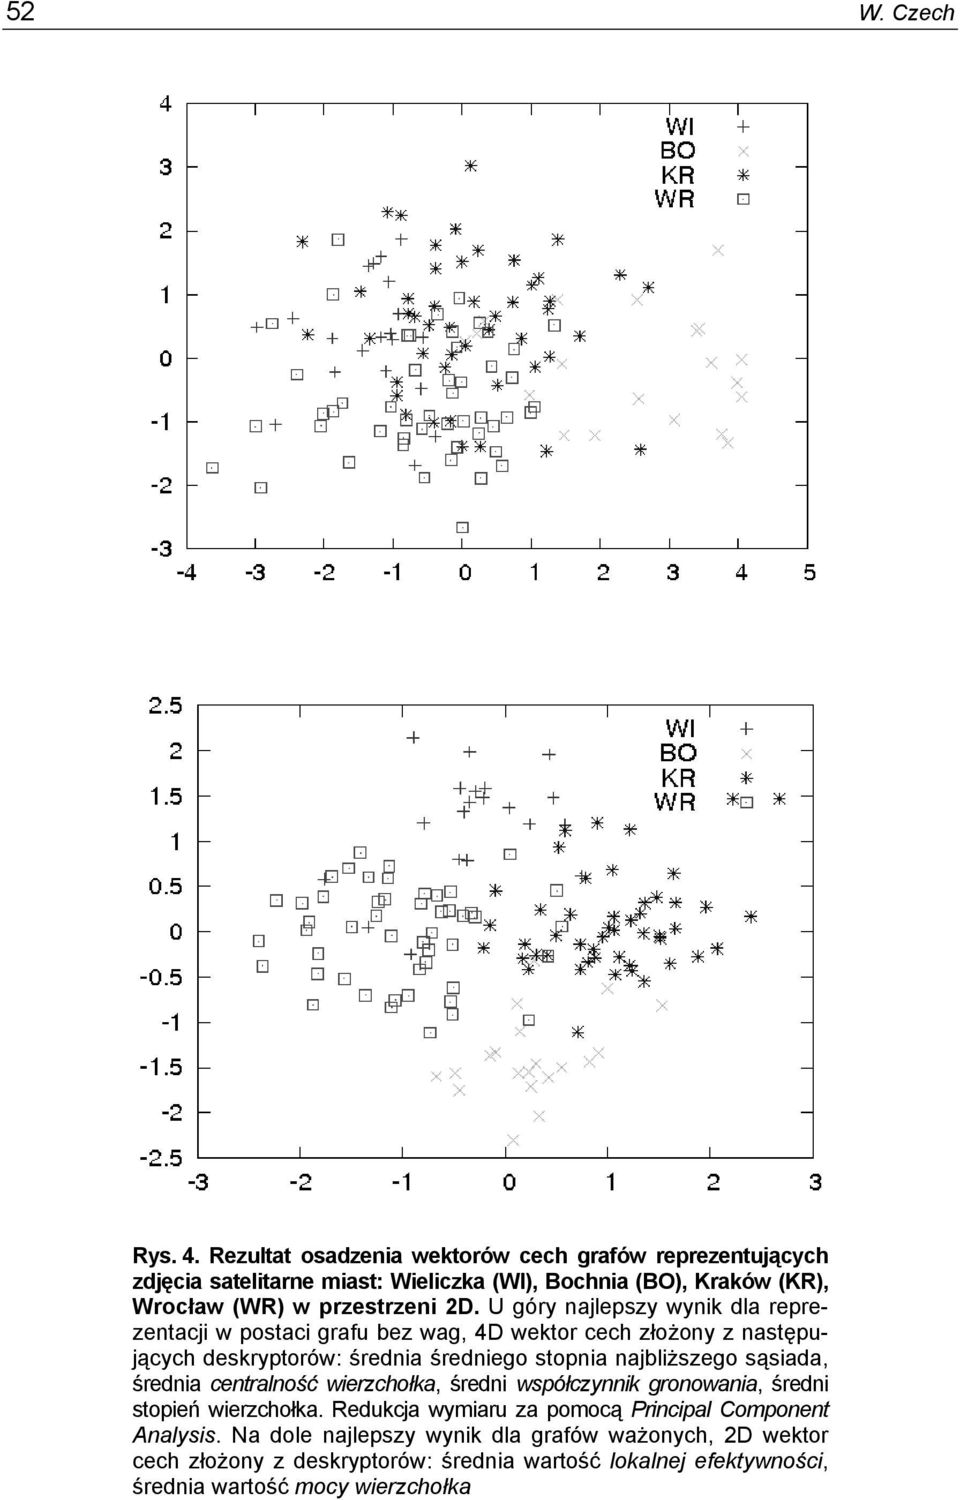 U góry najlepszy wyni dla reprezentacji w postaci grafu bez wag, 4D wetor cech złożony z następujących desryptorów: średnia średniego stopnia najbliższego